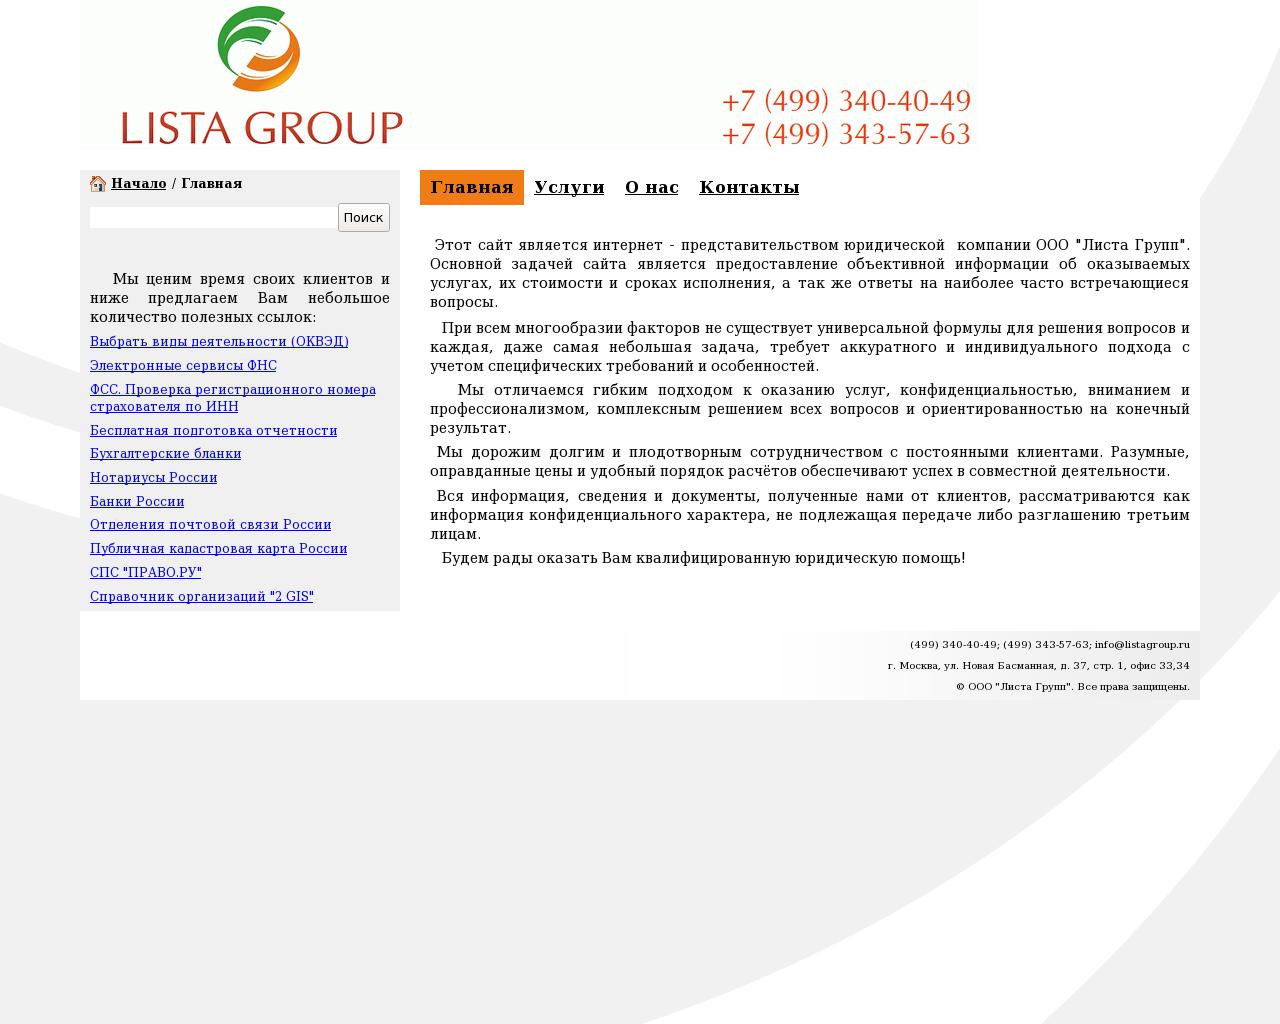 Изображение сайта listagroup.ru в разрешении 1280x1024